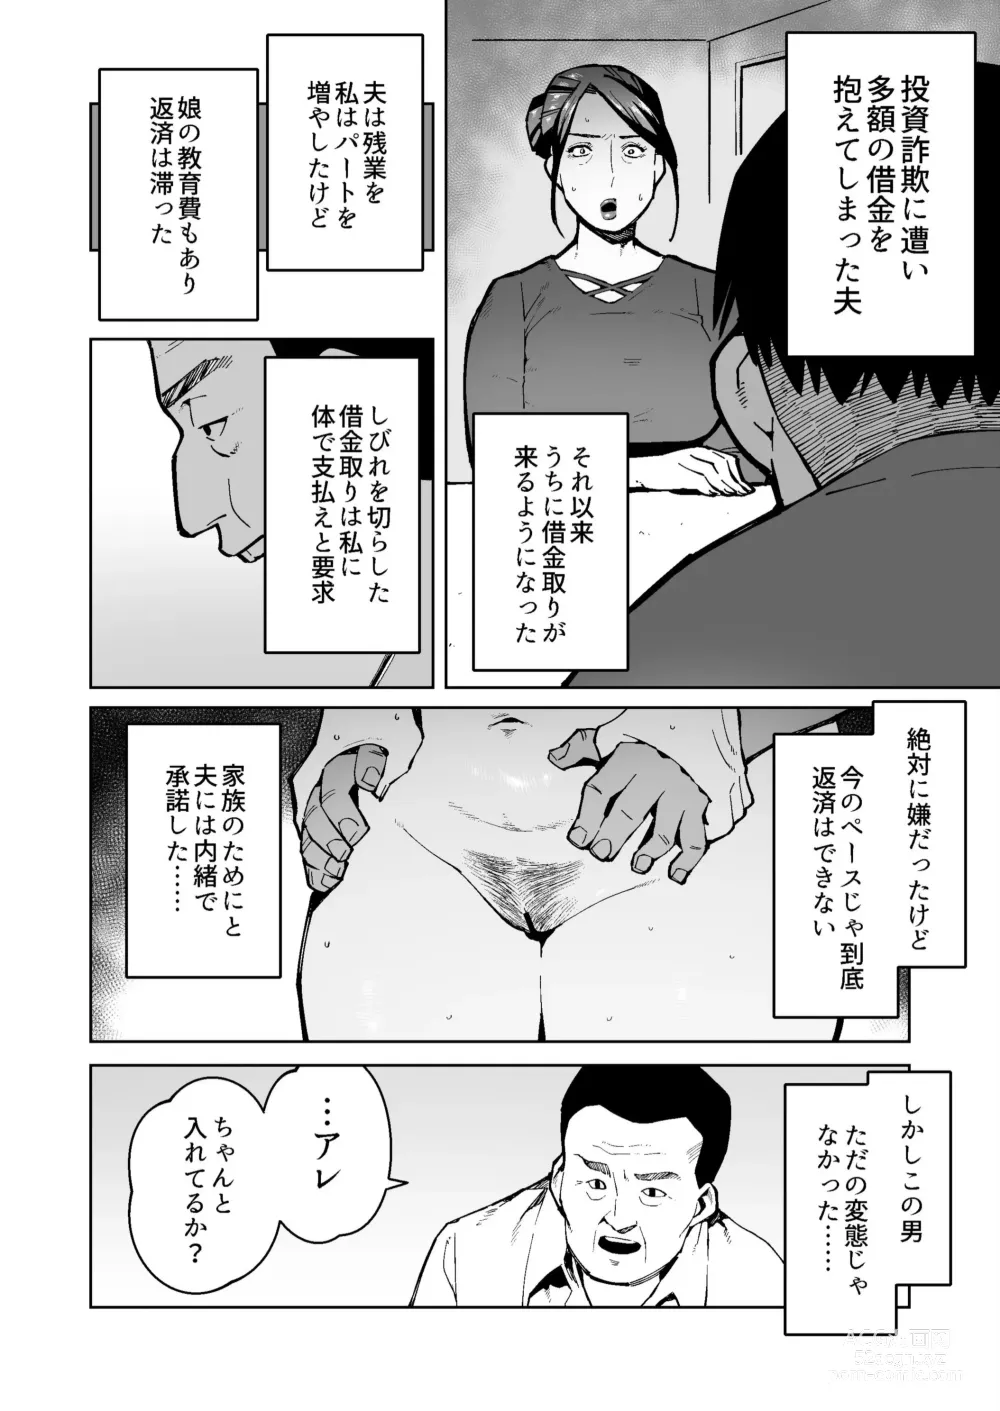 Page 2 of doujinshi Shakkin Hensai no Tame Anal Kakuchou Sare Deka Unko o Hineridasu Houman Jukujo